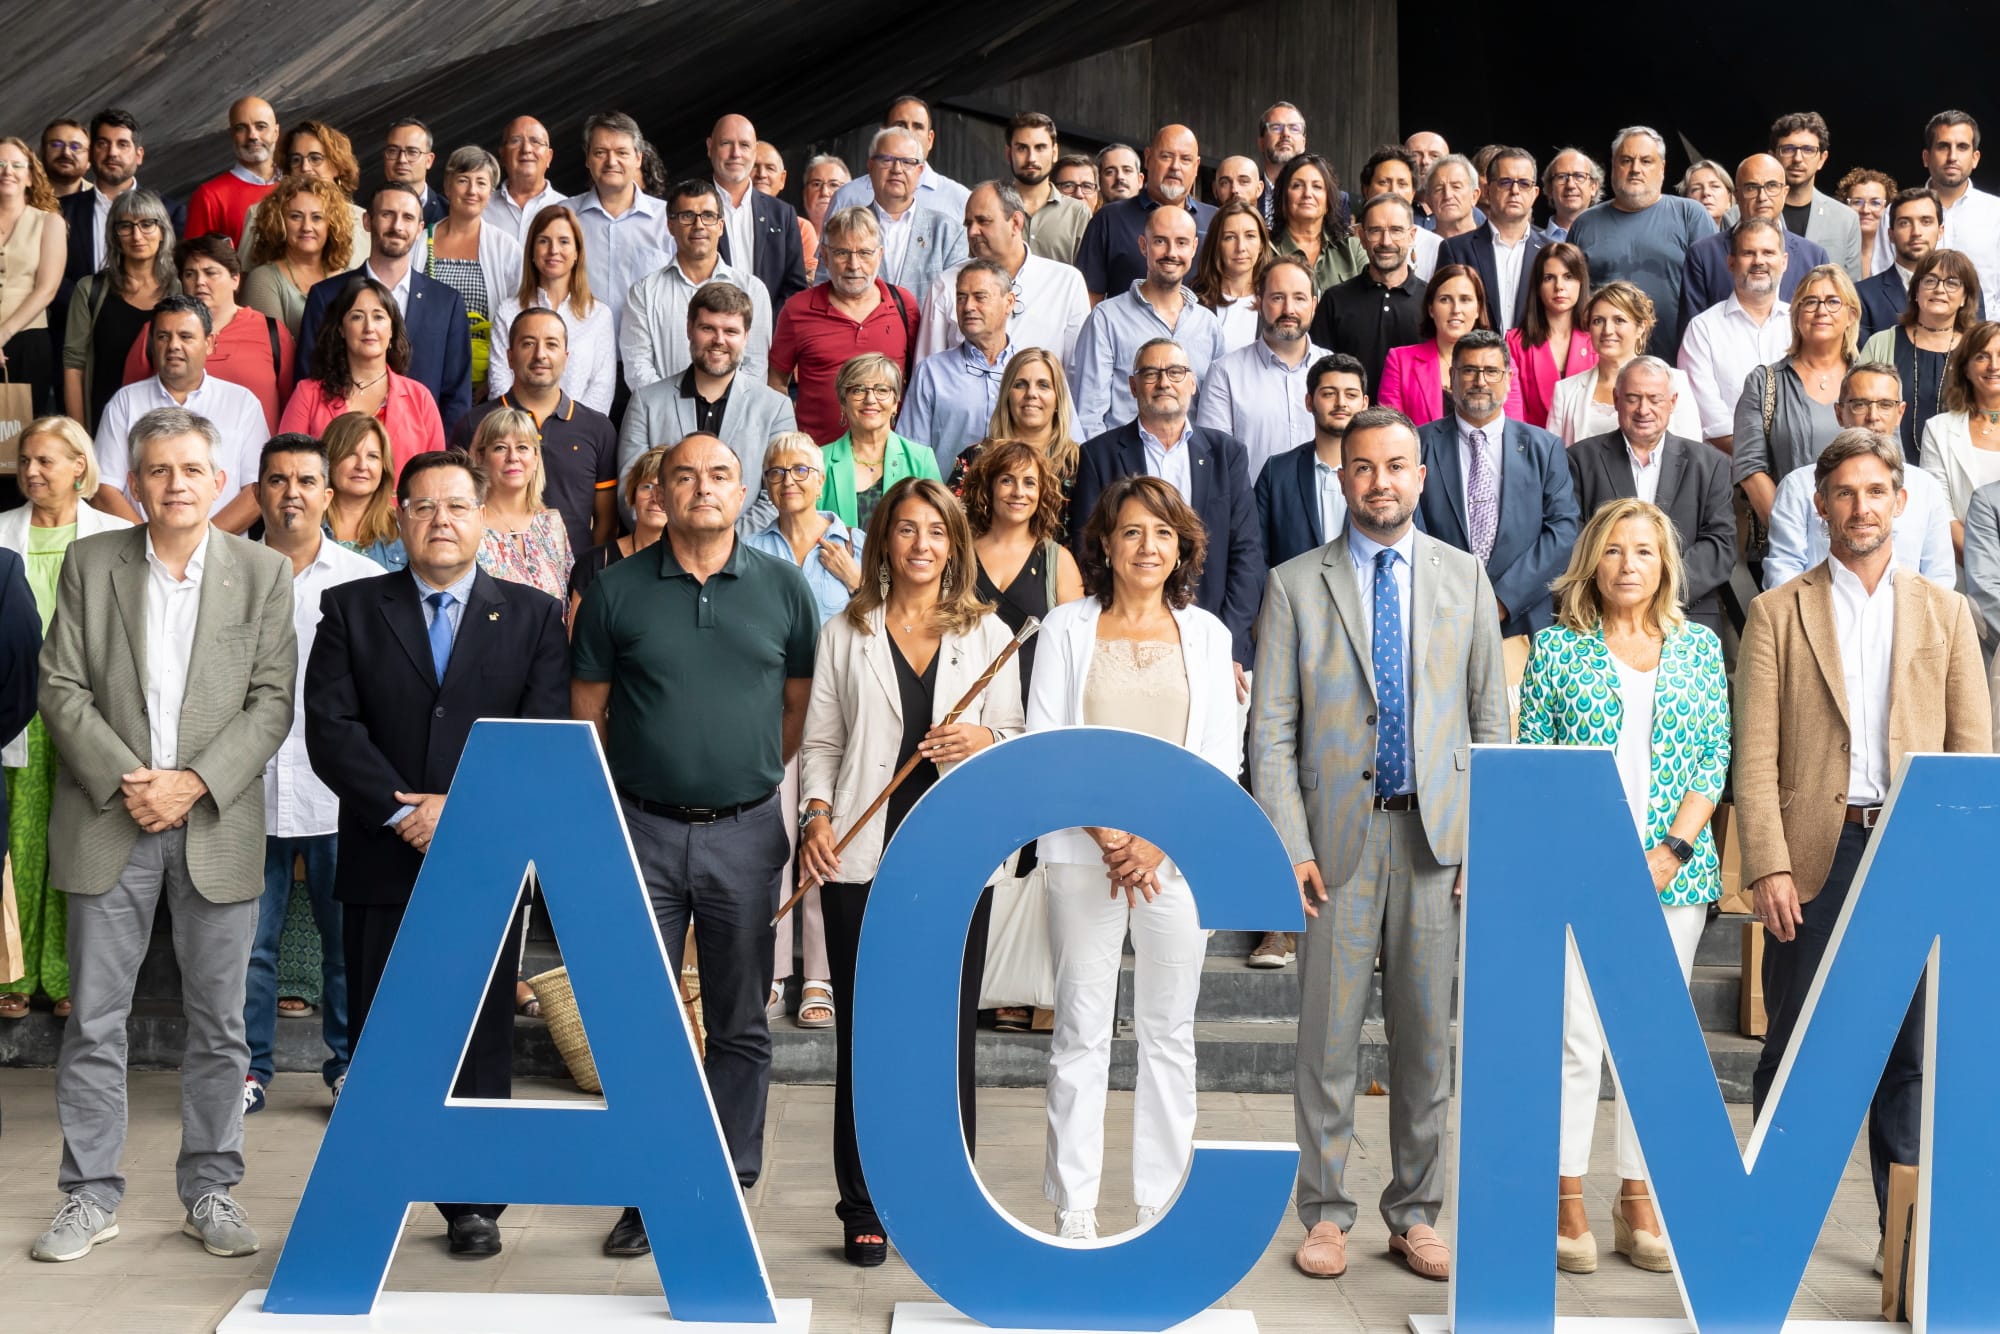 L'alcalde, Jaume Oliveras, escollit vicepresident de l'ACM